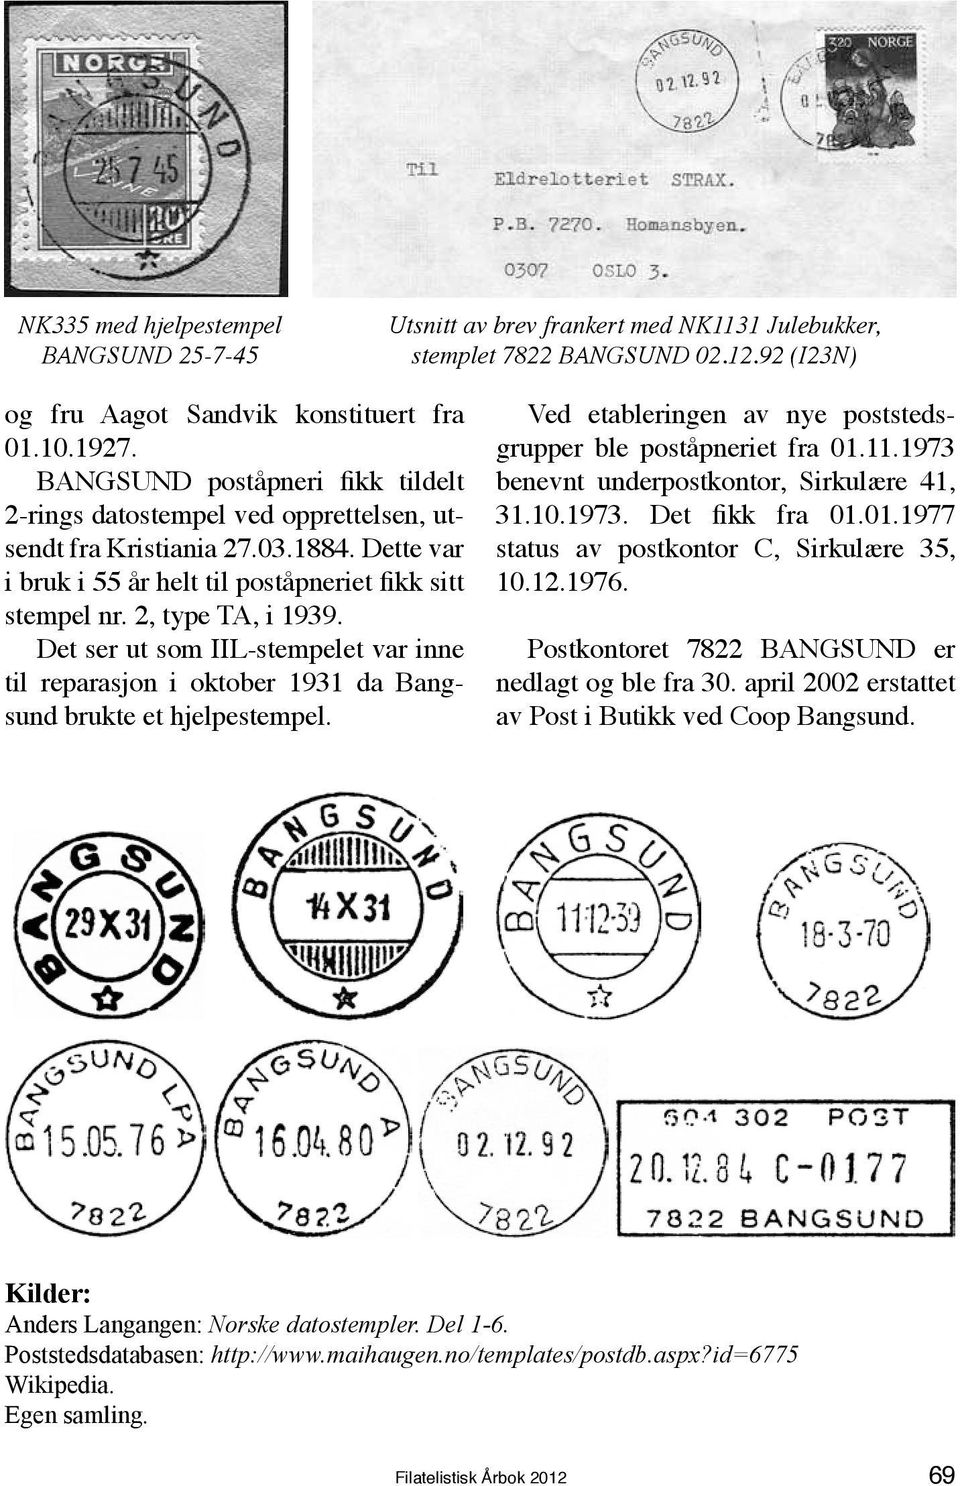 Det ser ut som IIL-stempelet var inne til reparasjon i oktober 1931 da Bangsund brukte et hjelpestempel. Ved etableringen av nye poststedsgrupper ble poståpneriet fra 01.11.